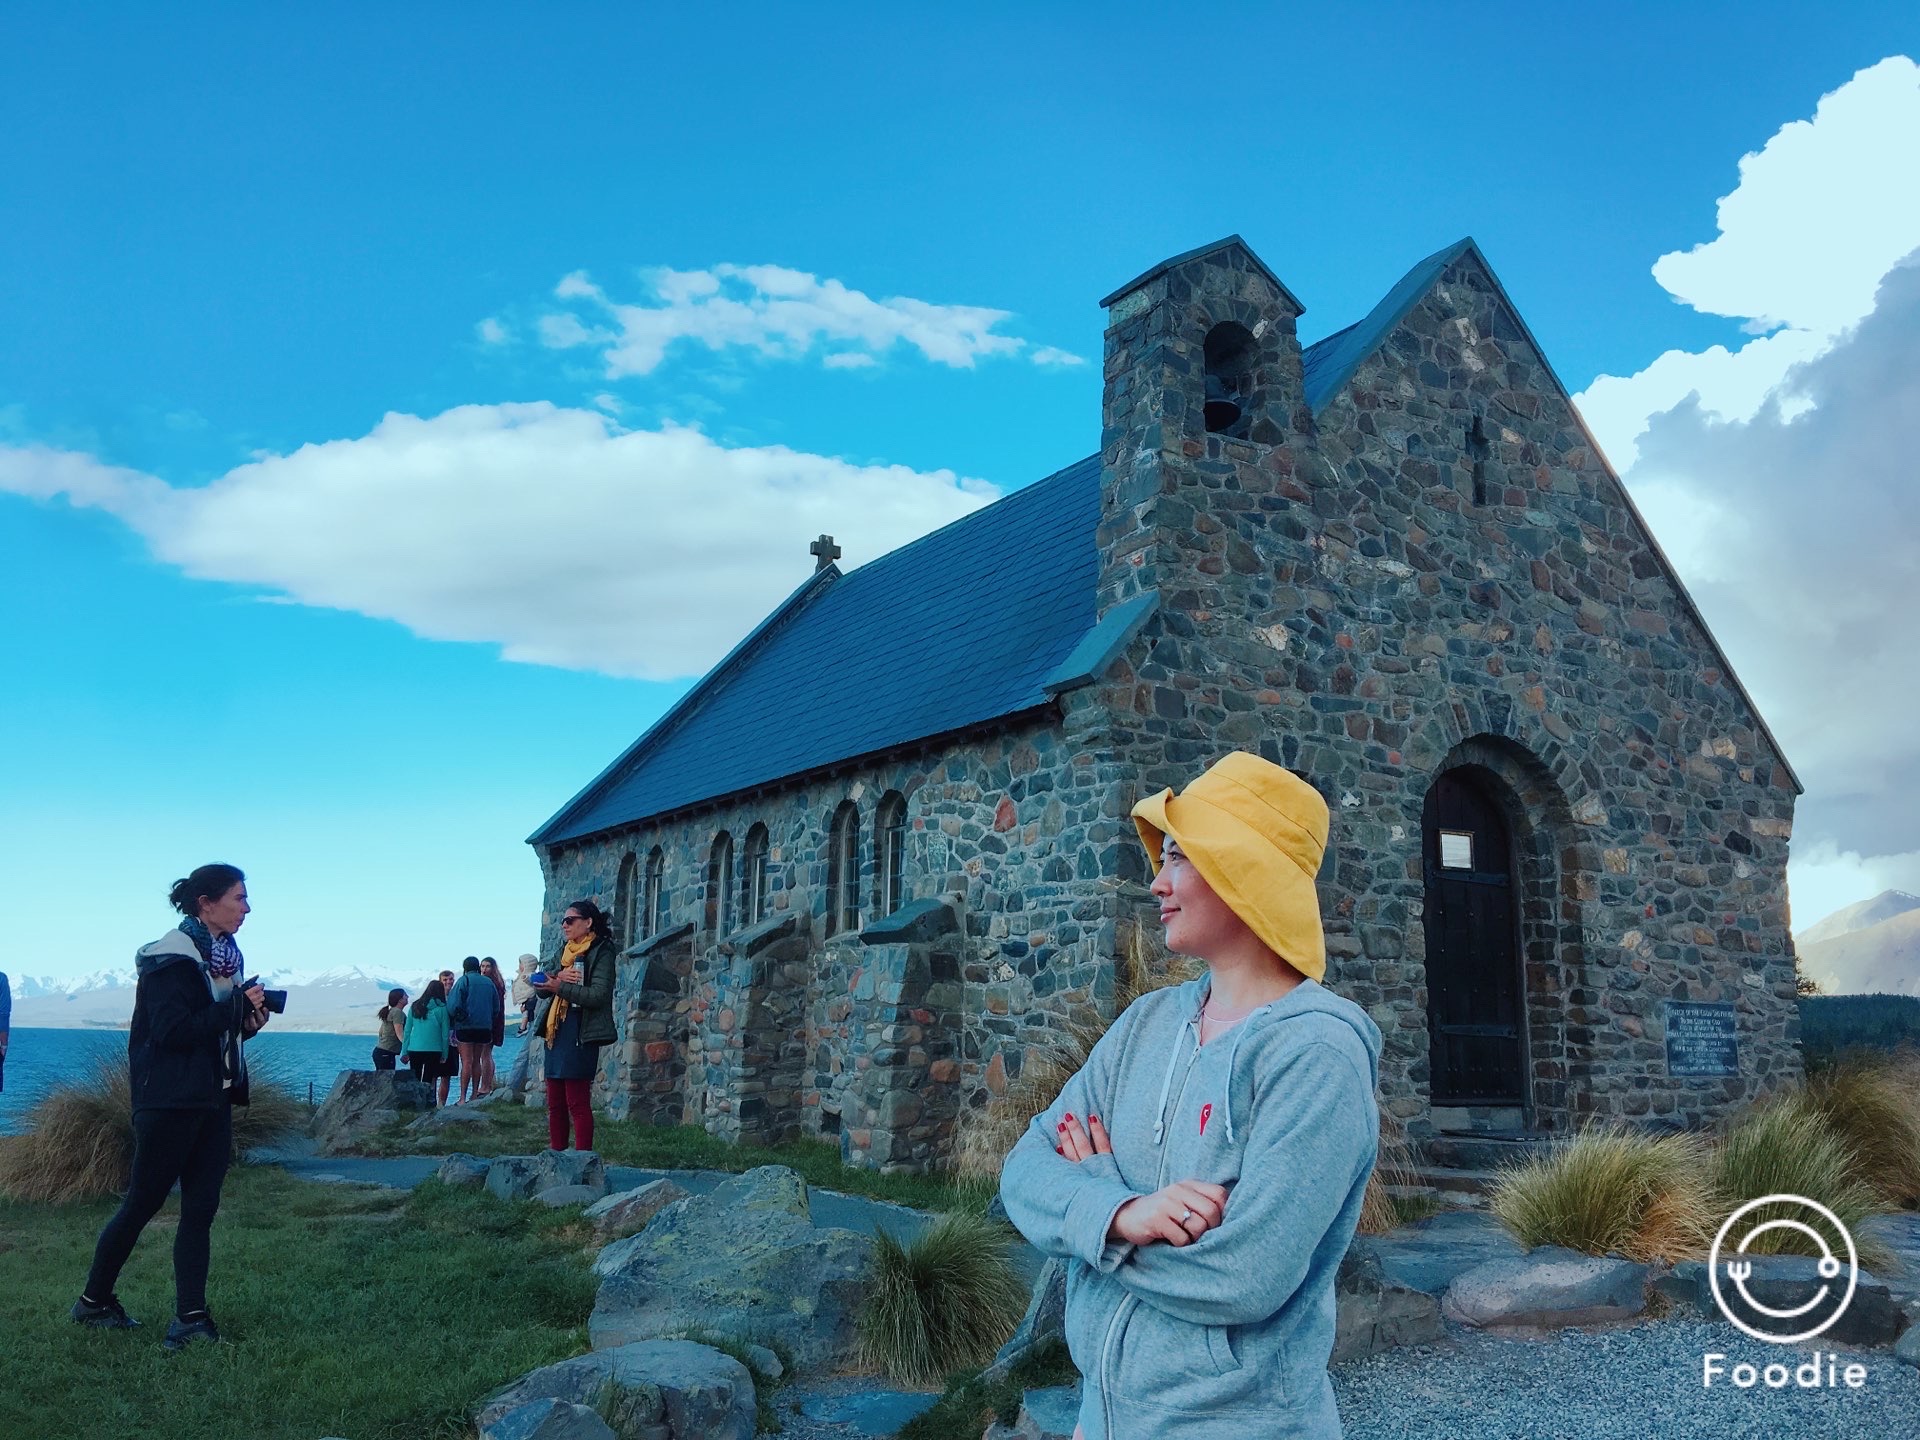 好牧羊人教堂   　这座漂亮的石教堂位于新西兰的特卡波湖岸边，背景是辽阔的山水风景，许多新人选择在这